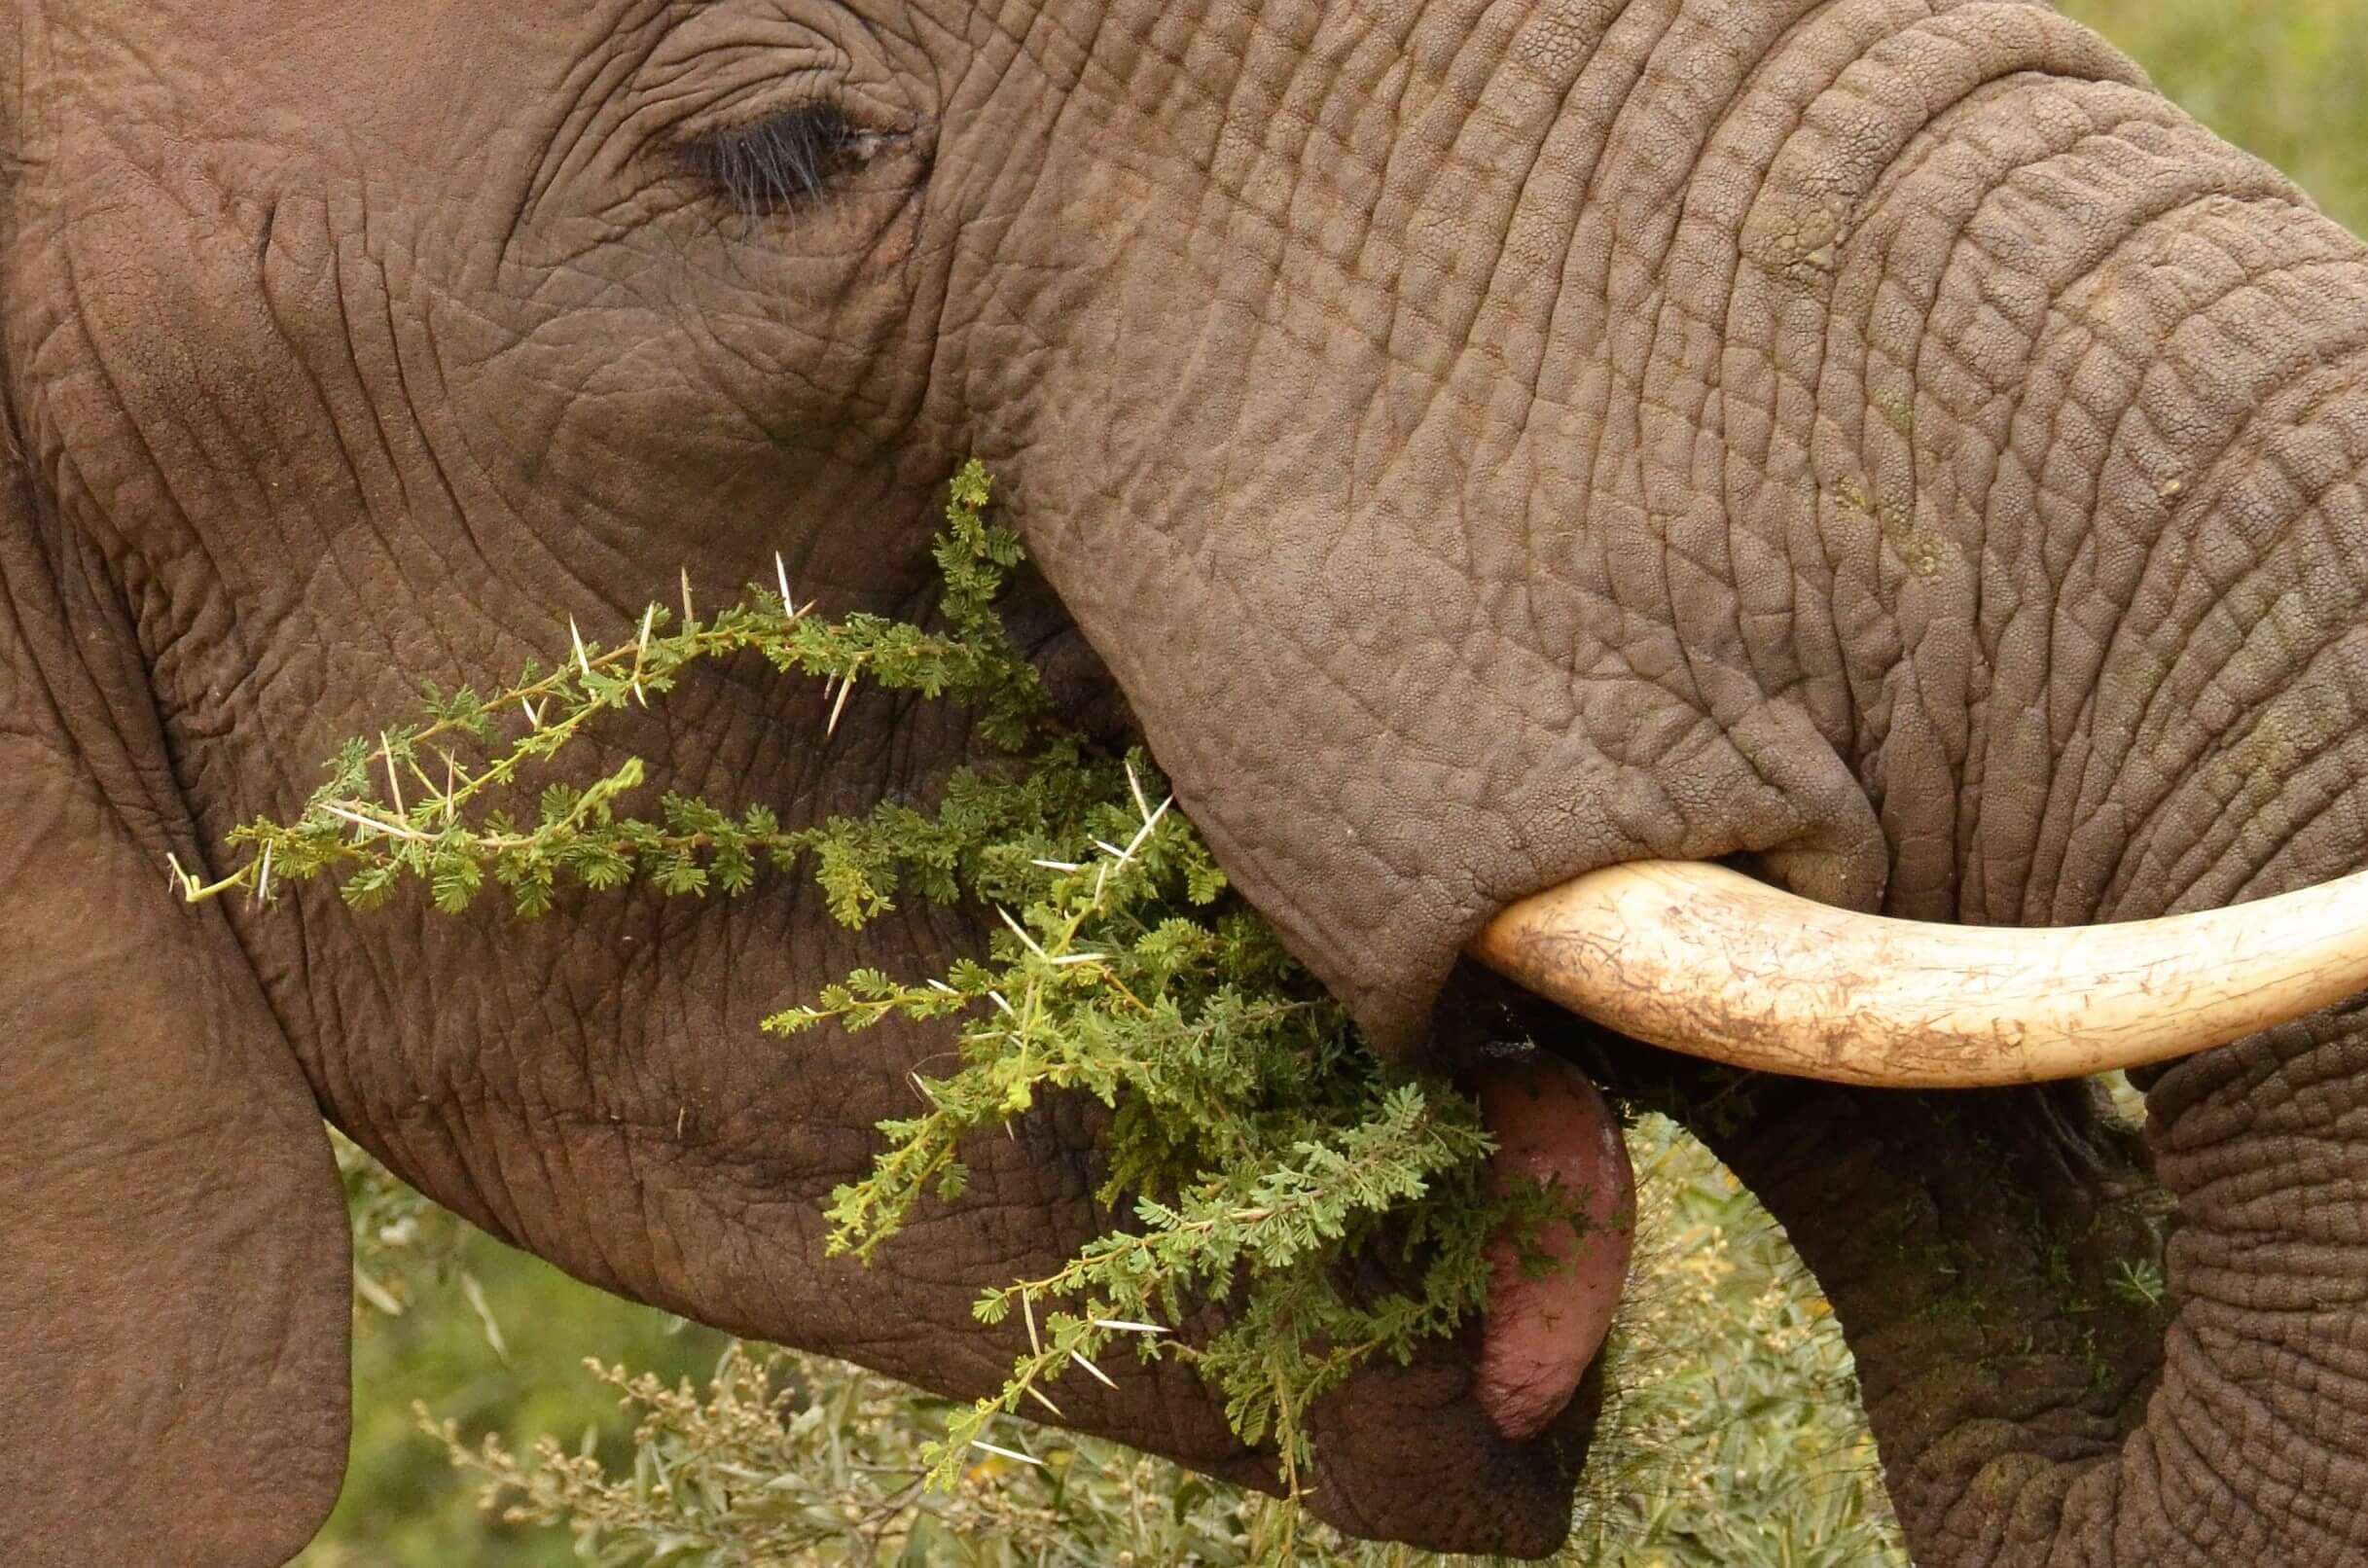 Eating elephant